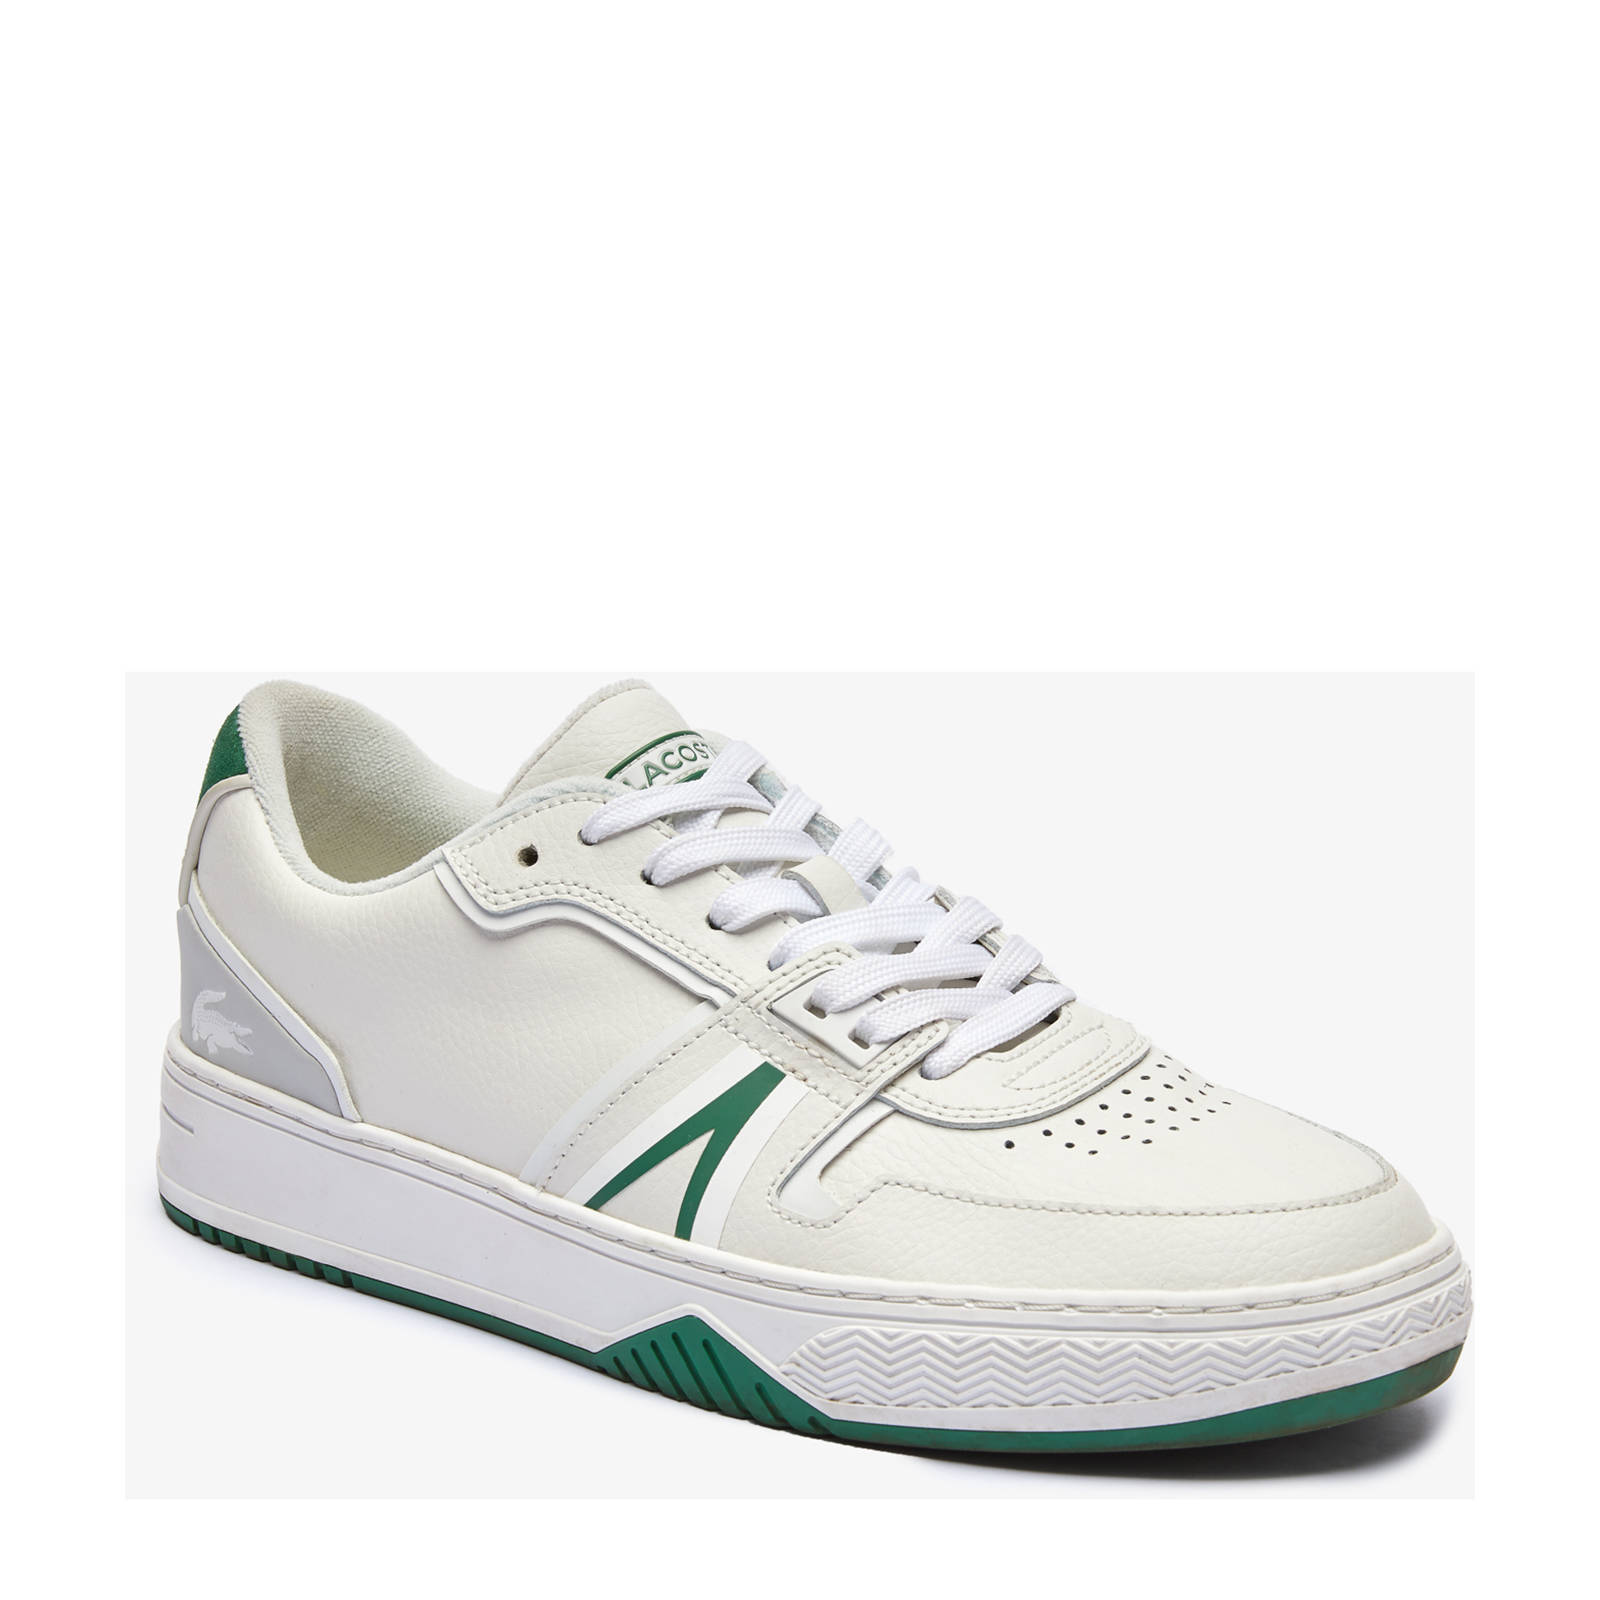 Lacoste L001 sneakers wit/groen online kopen